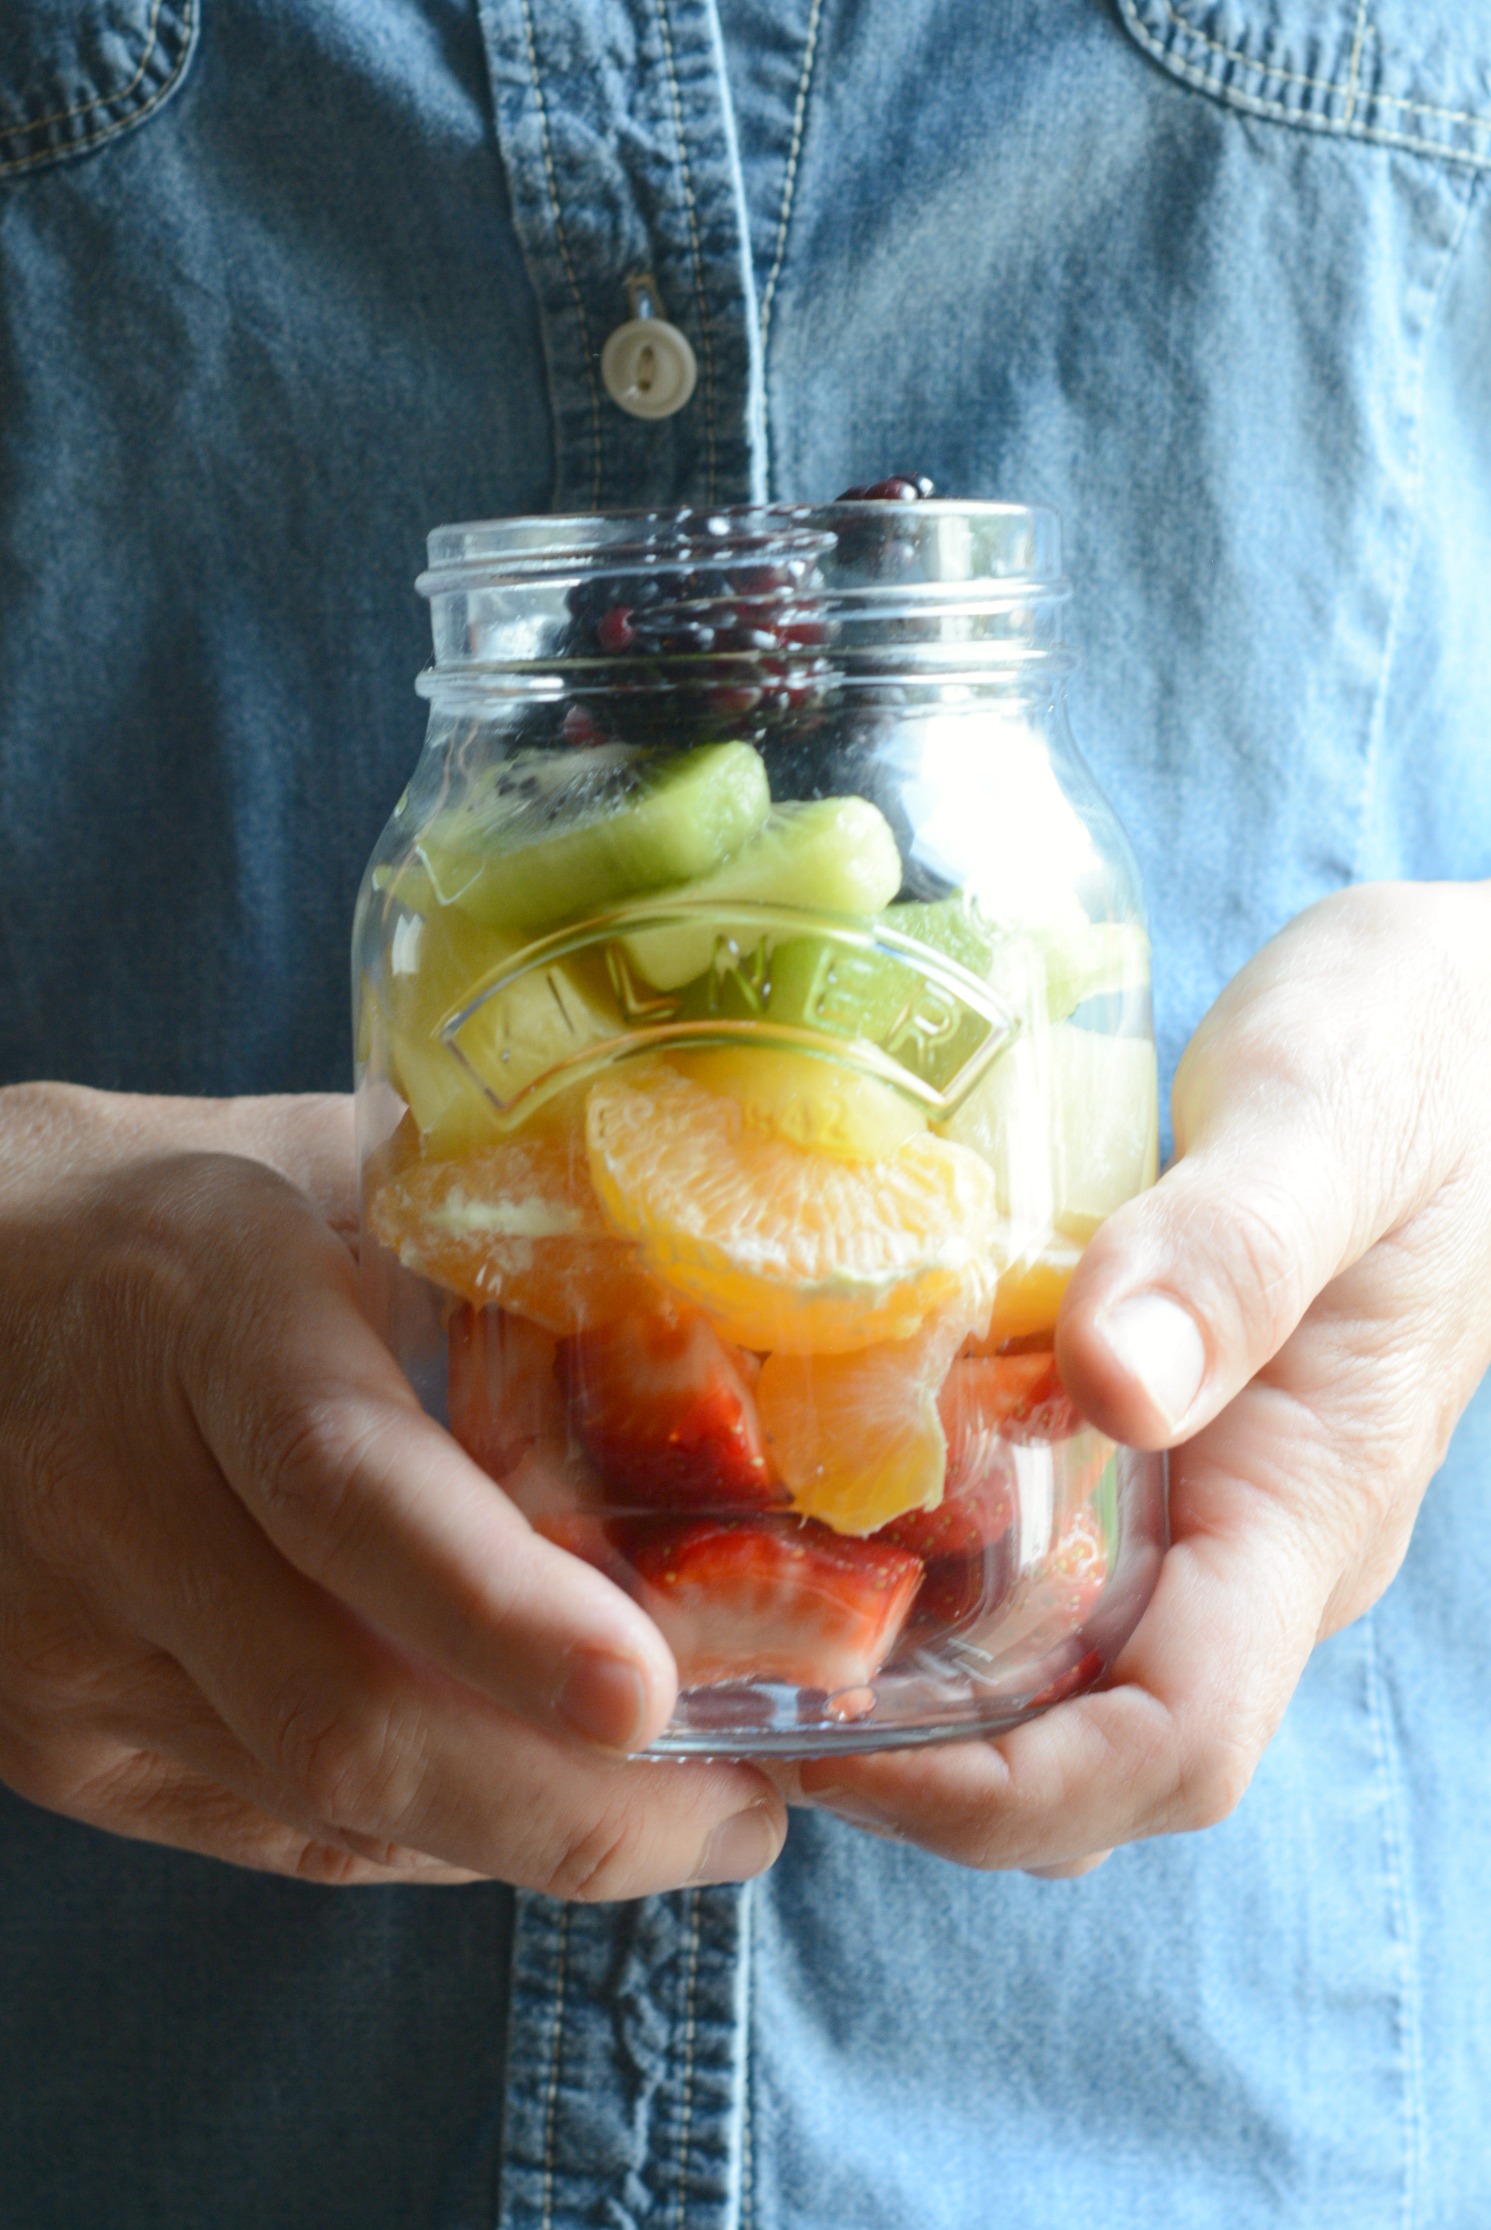 19 Healthy Jar Snack Ideas & Recipes